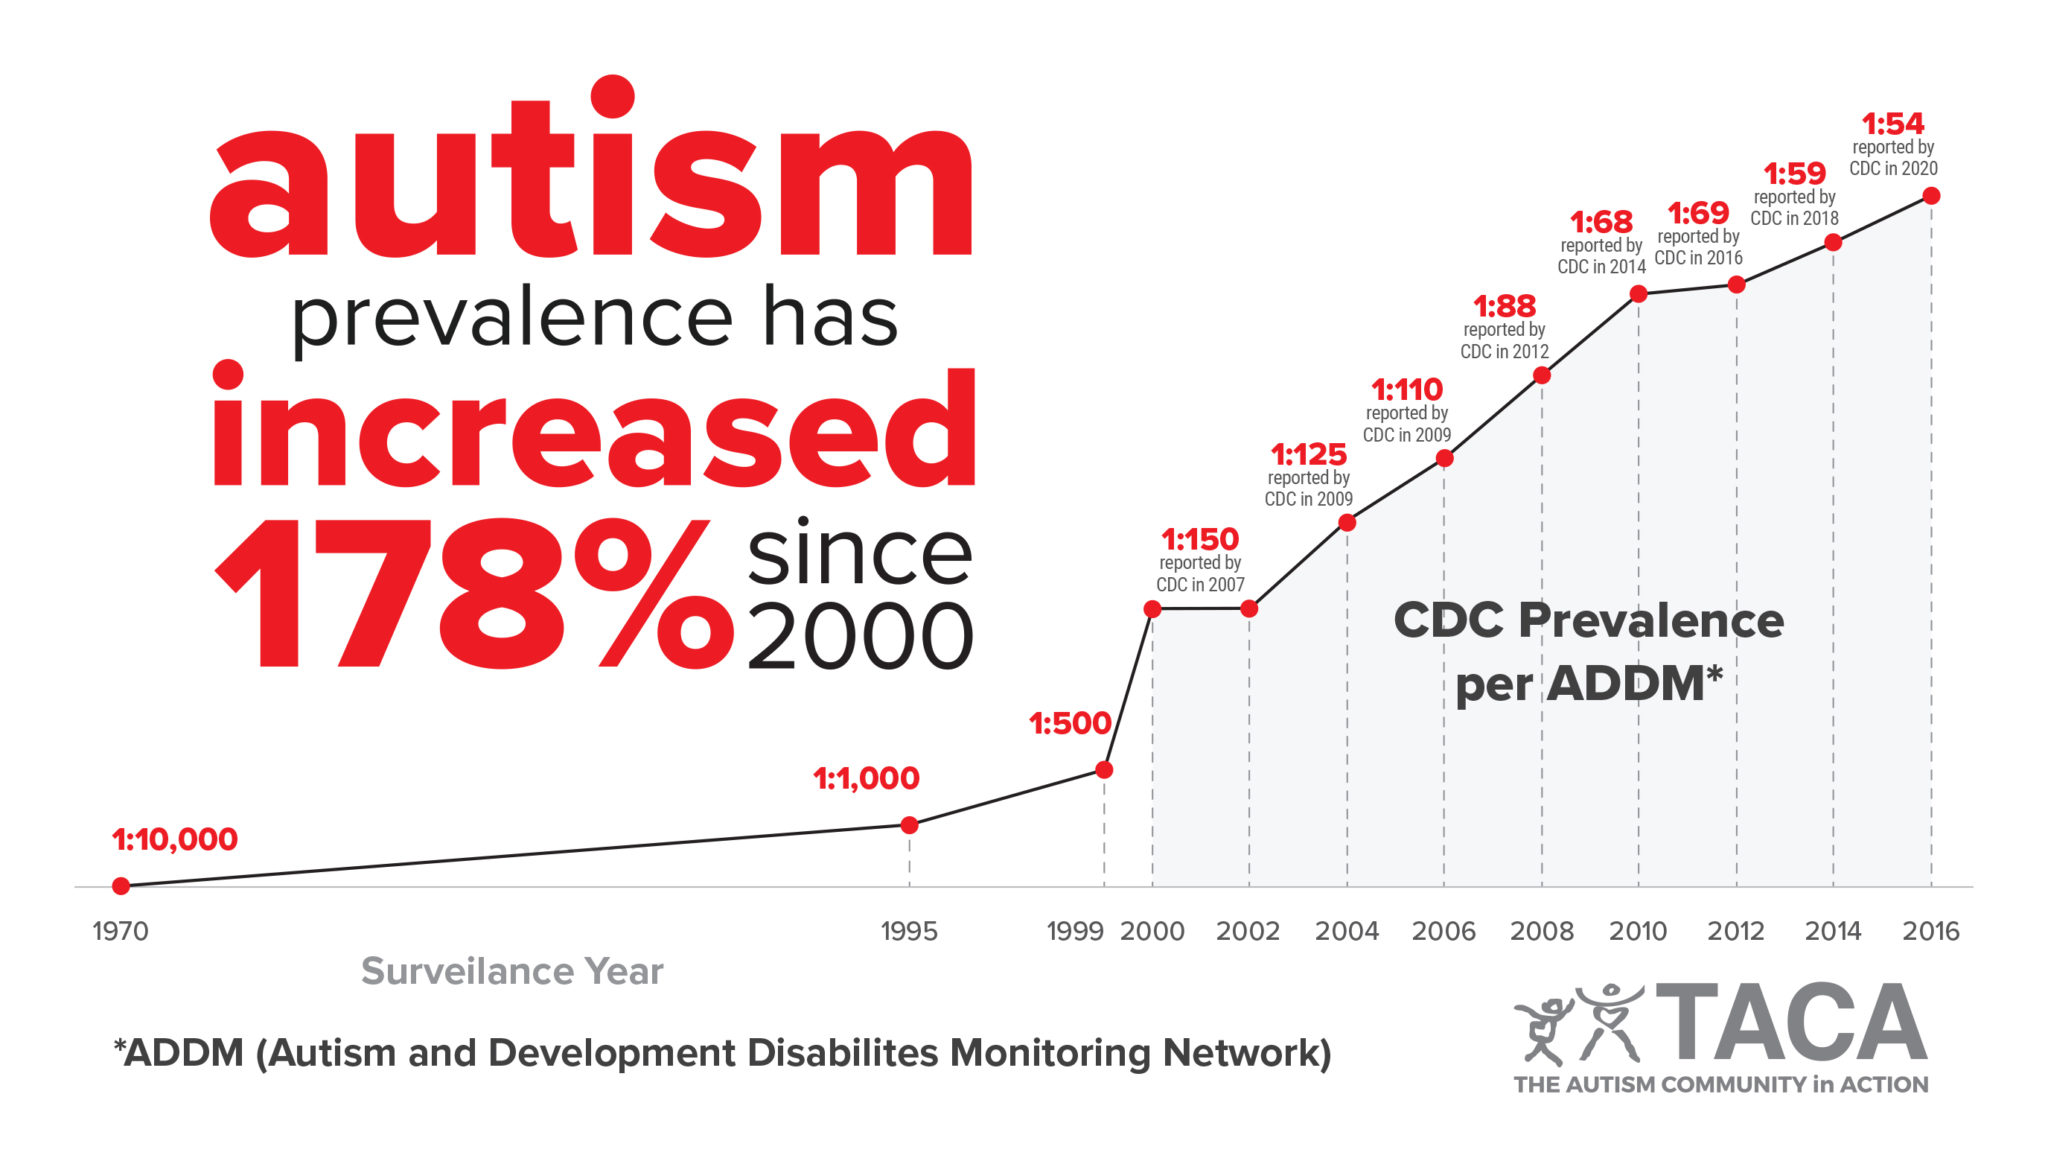 Autism Statistics The Autism Community in Action (TACA)